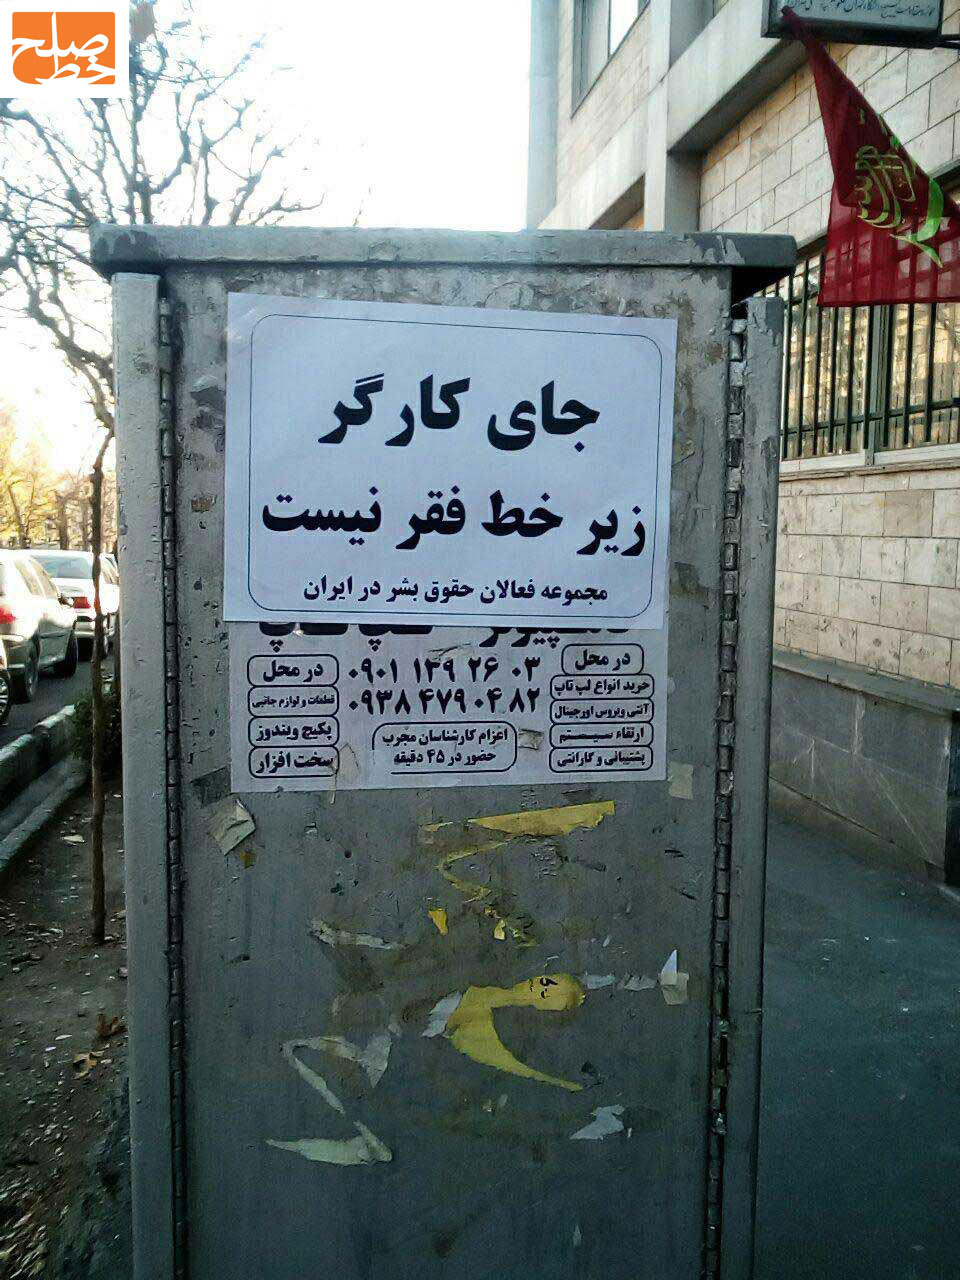 نمونه ای فعالیت های خیابانی در حمایت از حقوق بشر در ایران